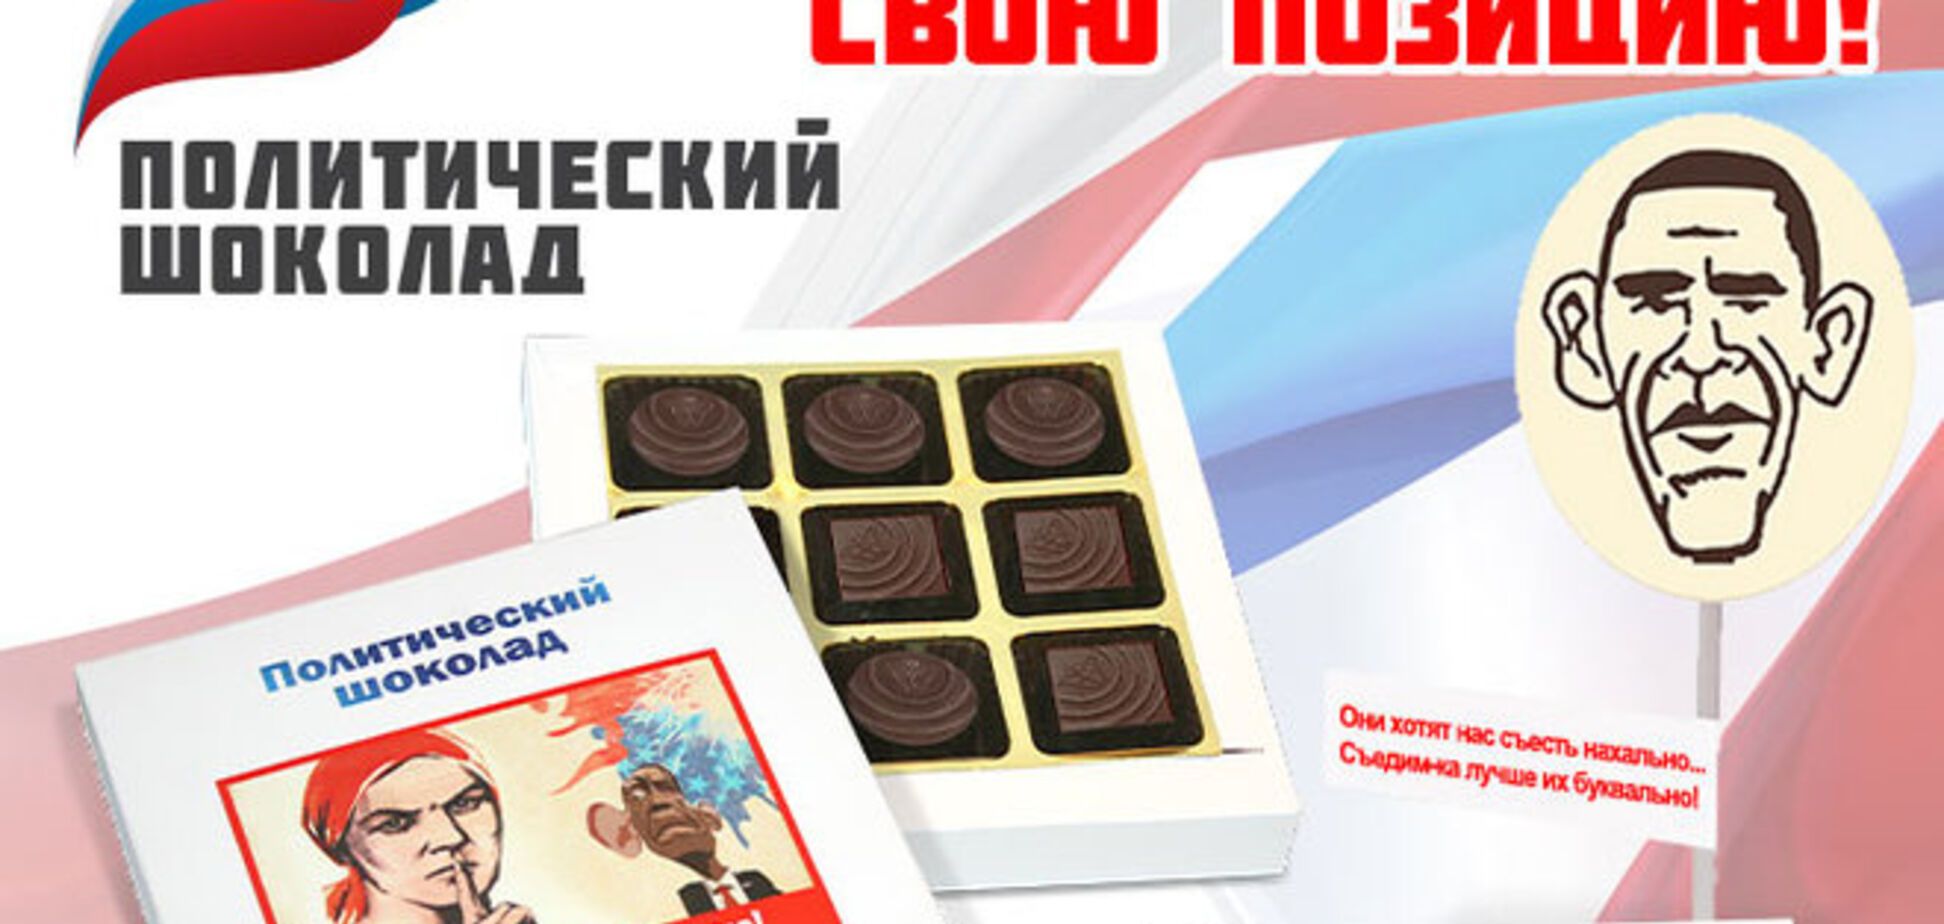 У Росії випустили шоколад з карикатурами і некоректними жартами на адресу Обами, Меркель і Псакі: фотофакт